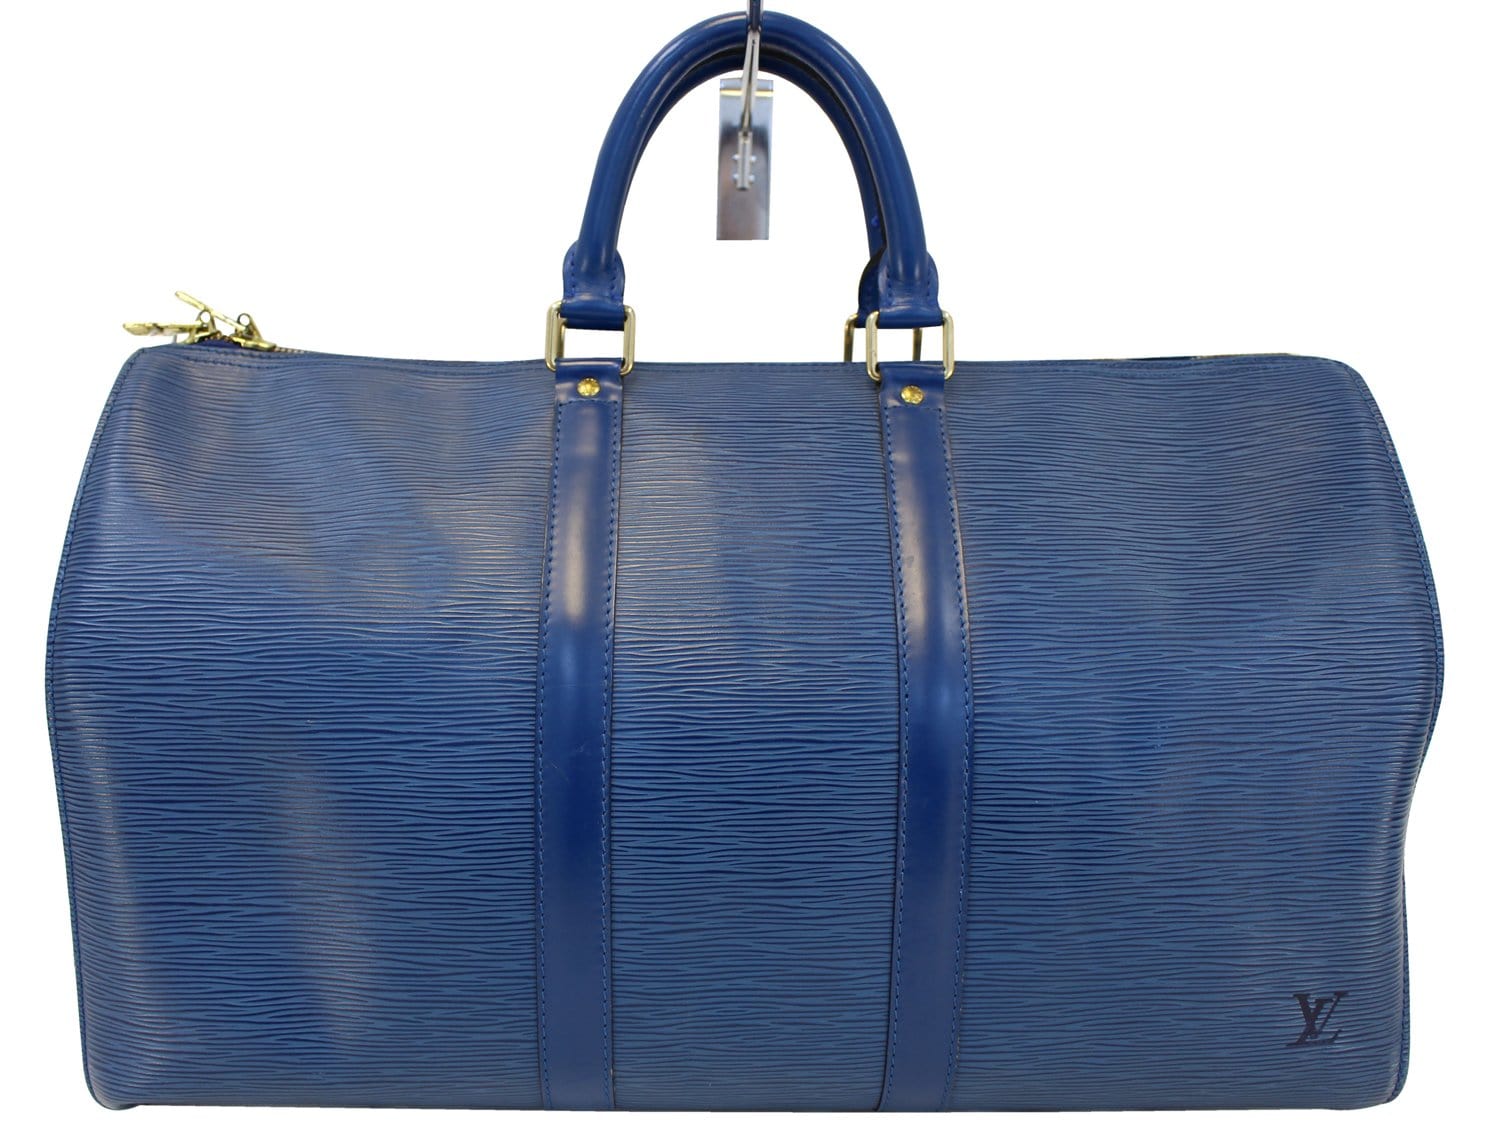 LOUIS VUITTON Epi Leather Blue Keepall 45 Boston Bag